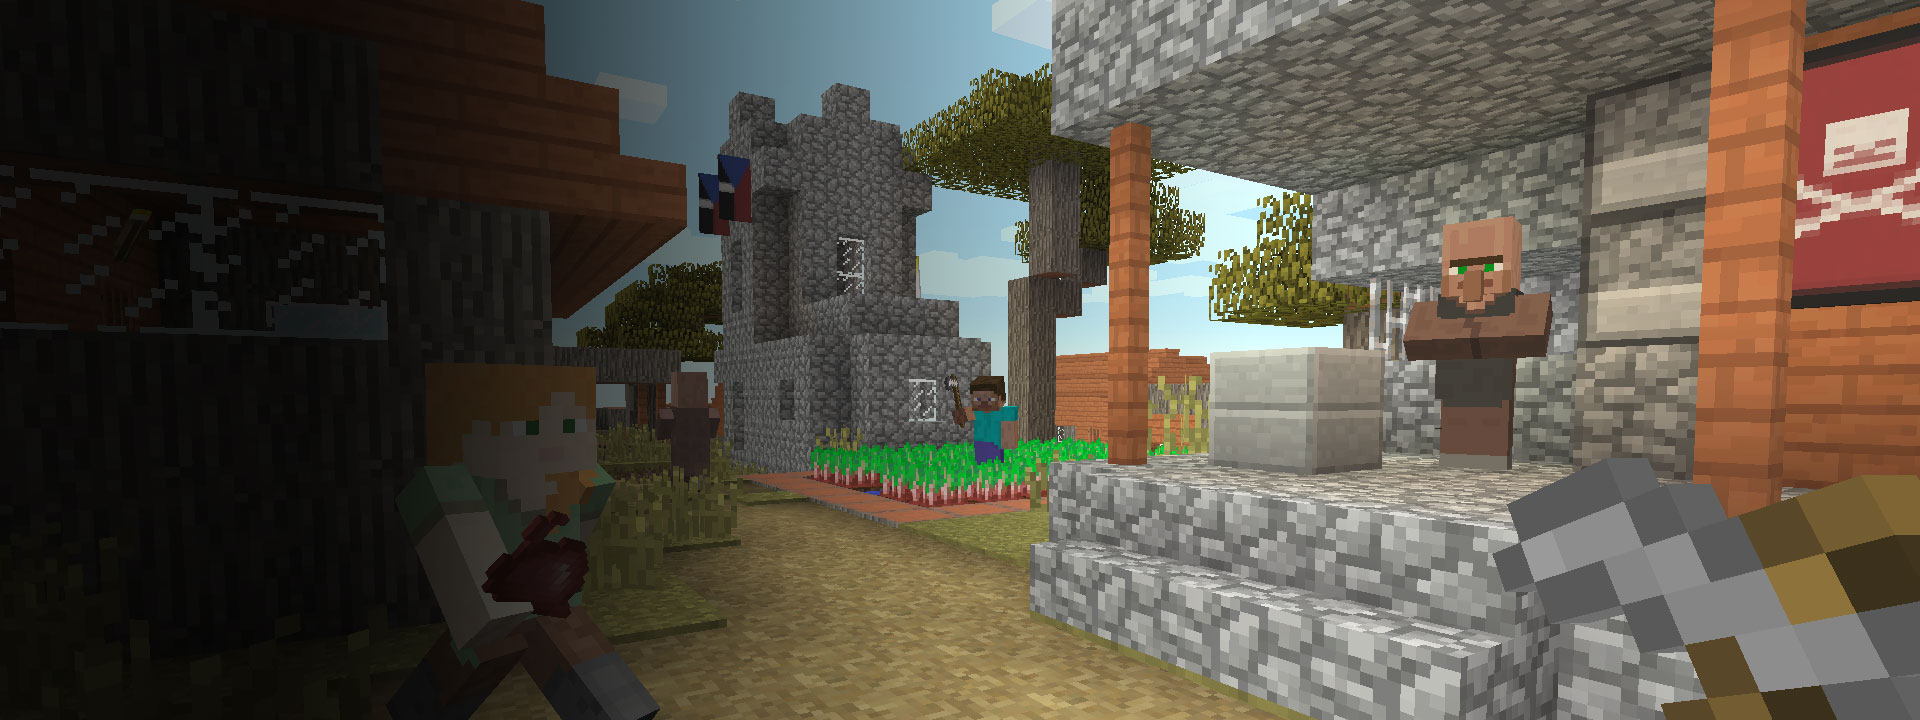 家々を背景に歩く Minecraft のキャラクター達。